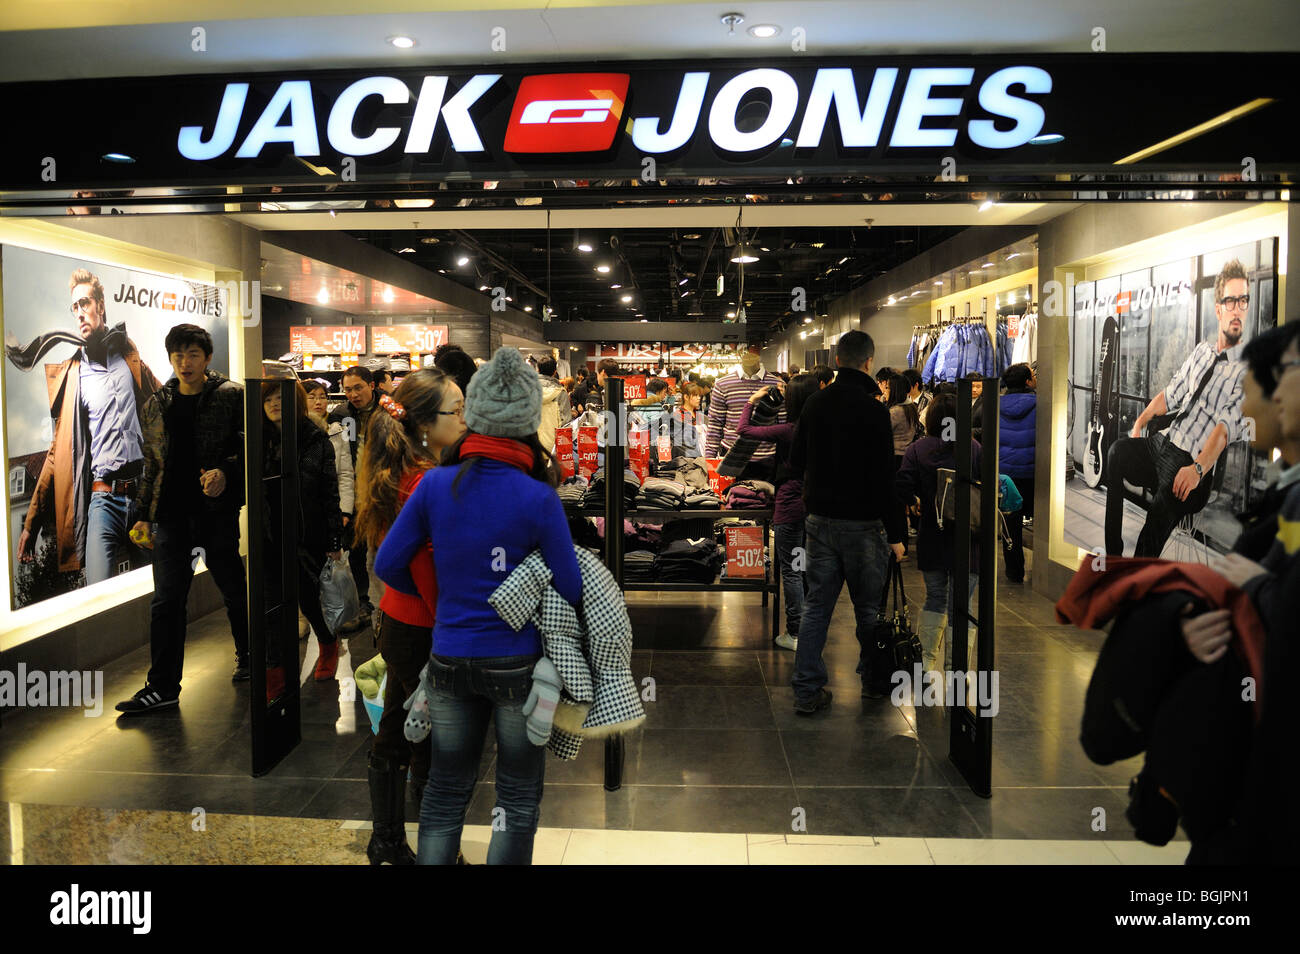 Jack & Jones shop in Dayuecheng shopping mall, Beijing, China. 09-Jan-2010  Stock Photo - Alamy